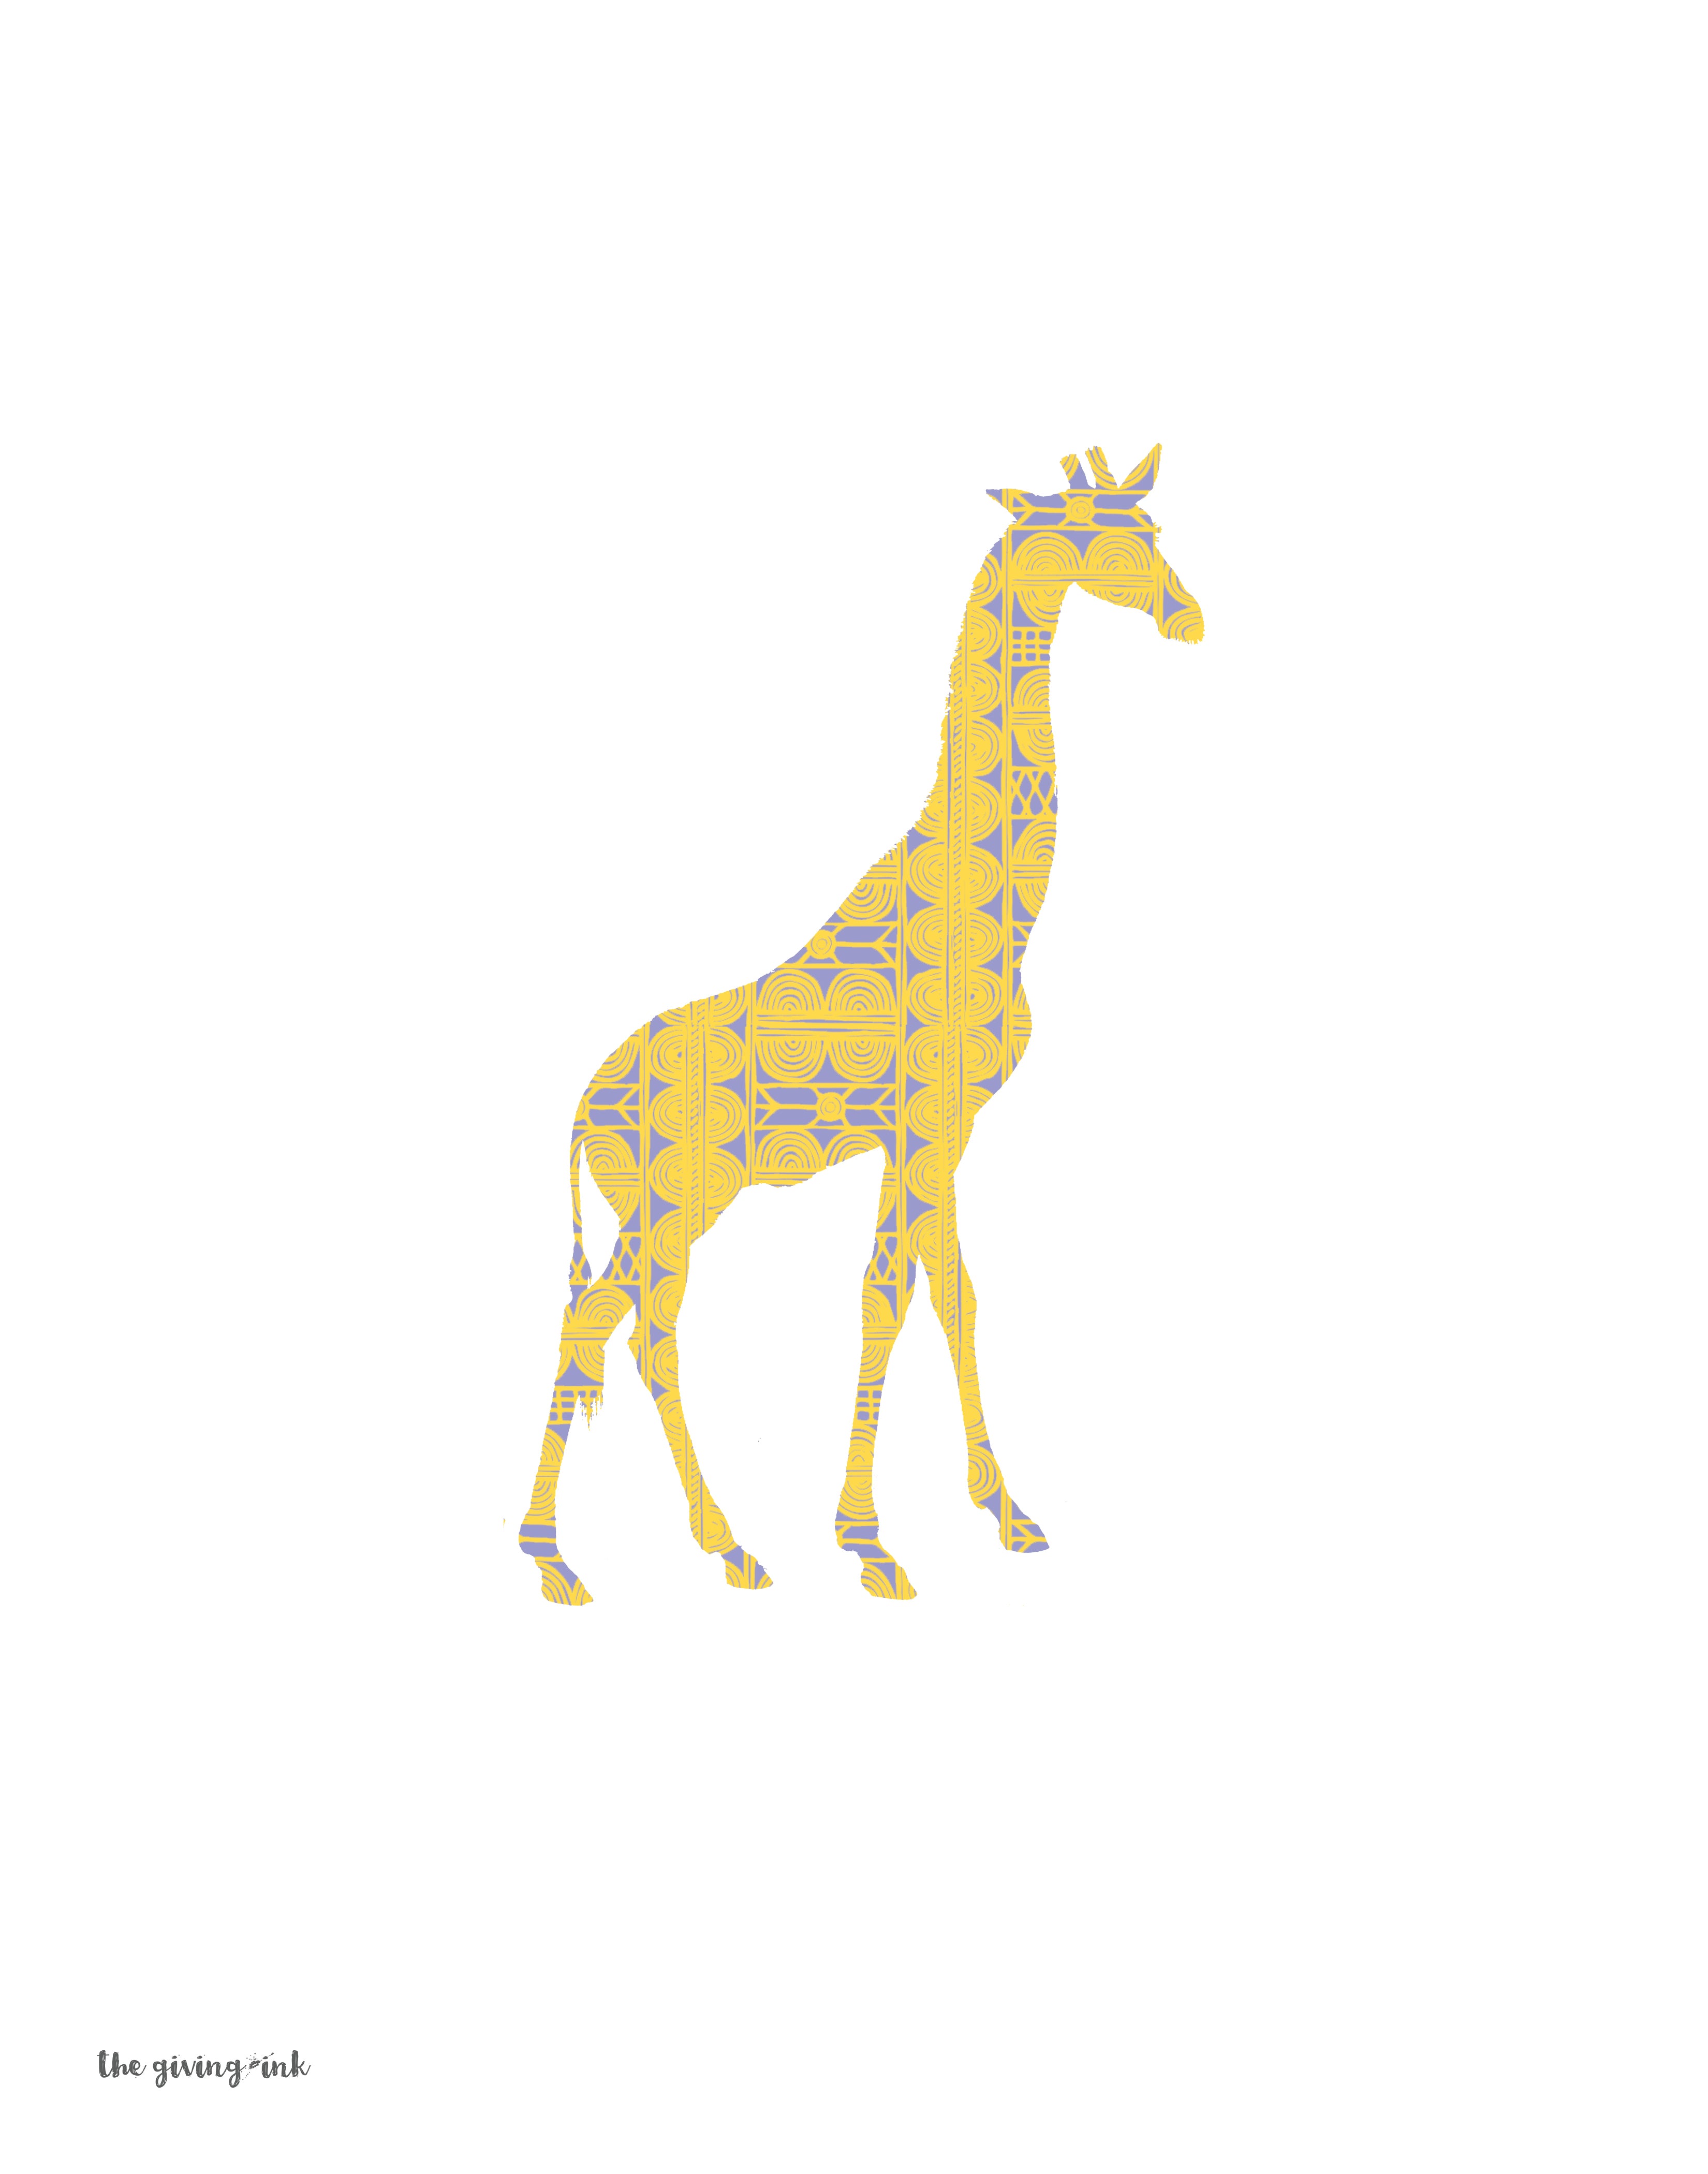 African Giraffe Downloadable Print